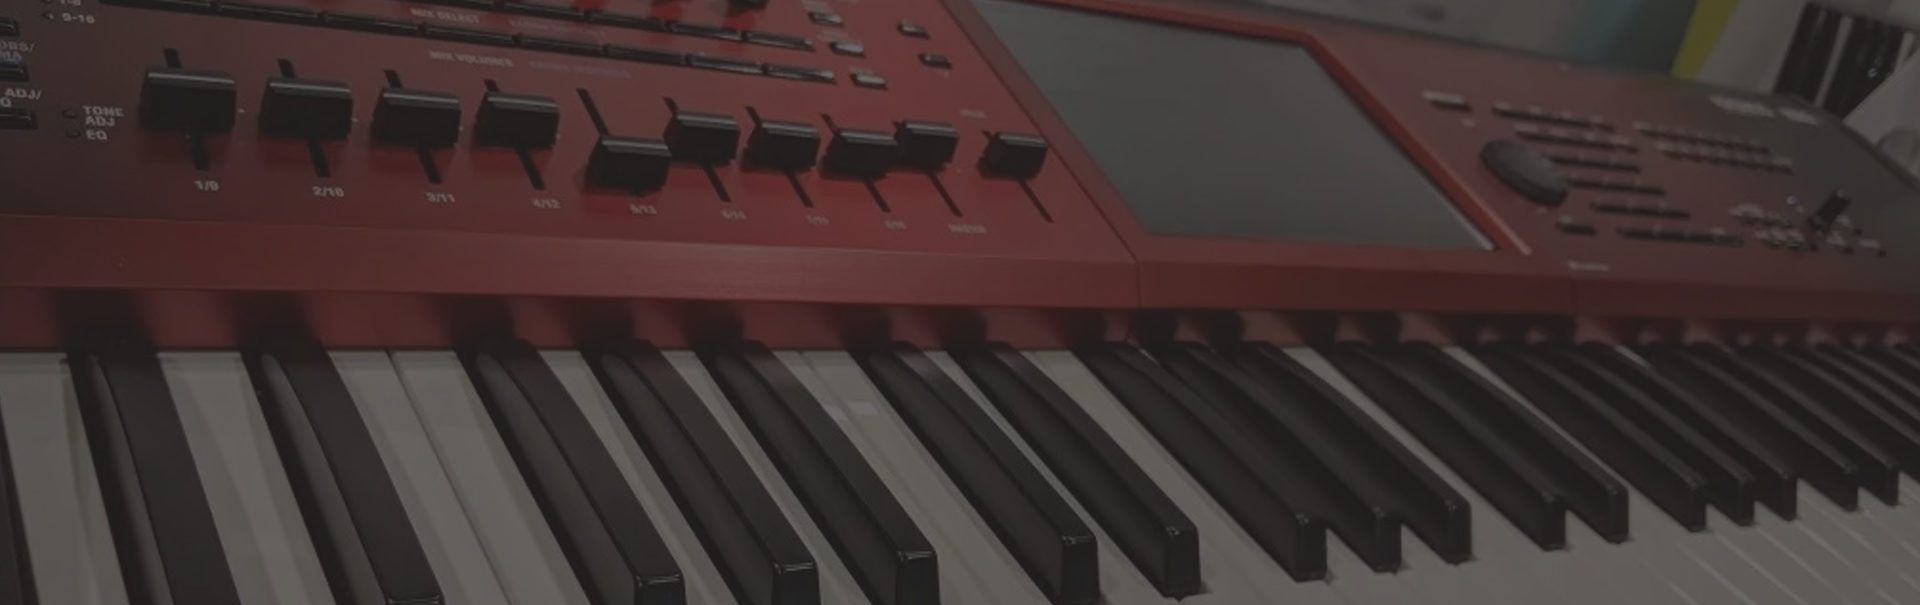 calidad gusto Pebish Yamaha Clavinova Digital Pianos - REVIEW | 13 Models Comparison